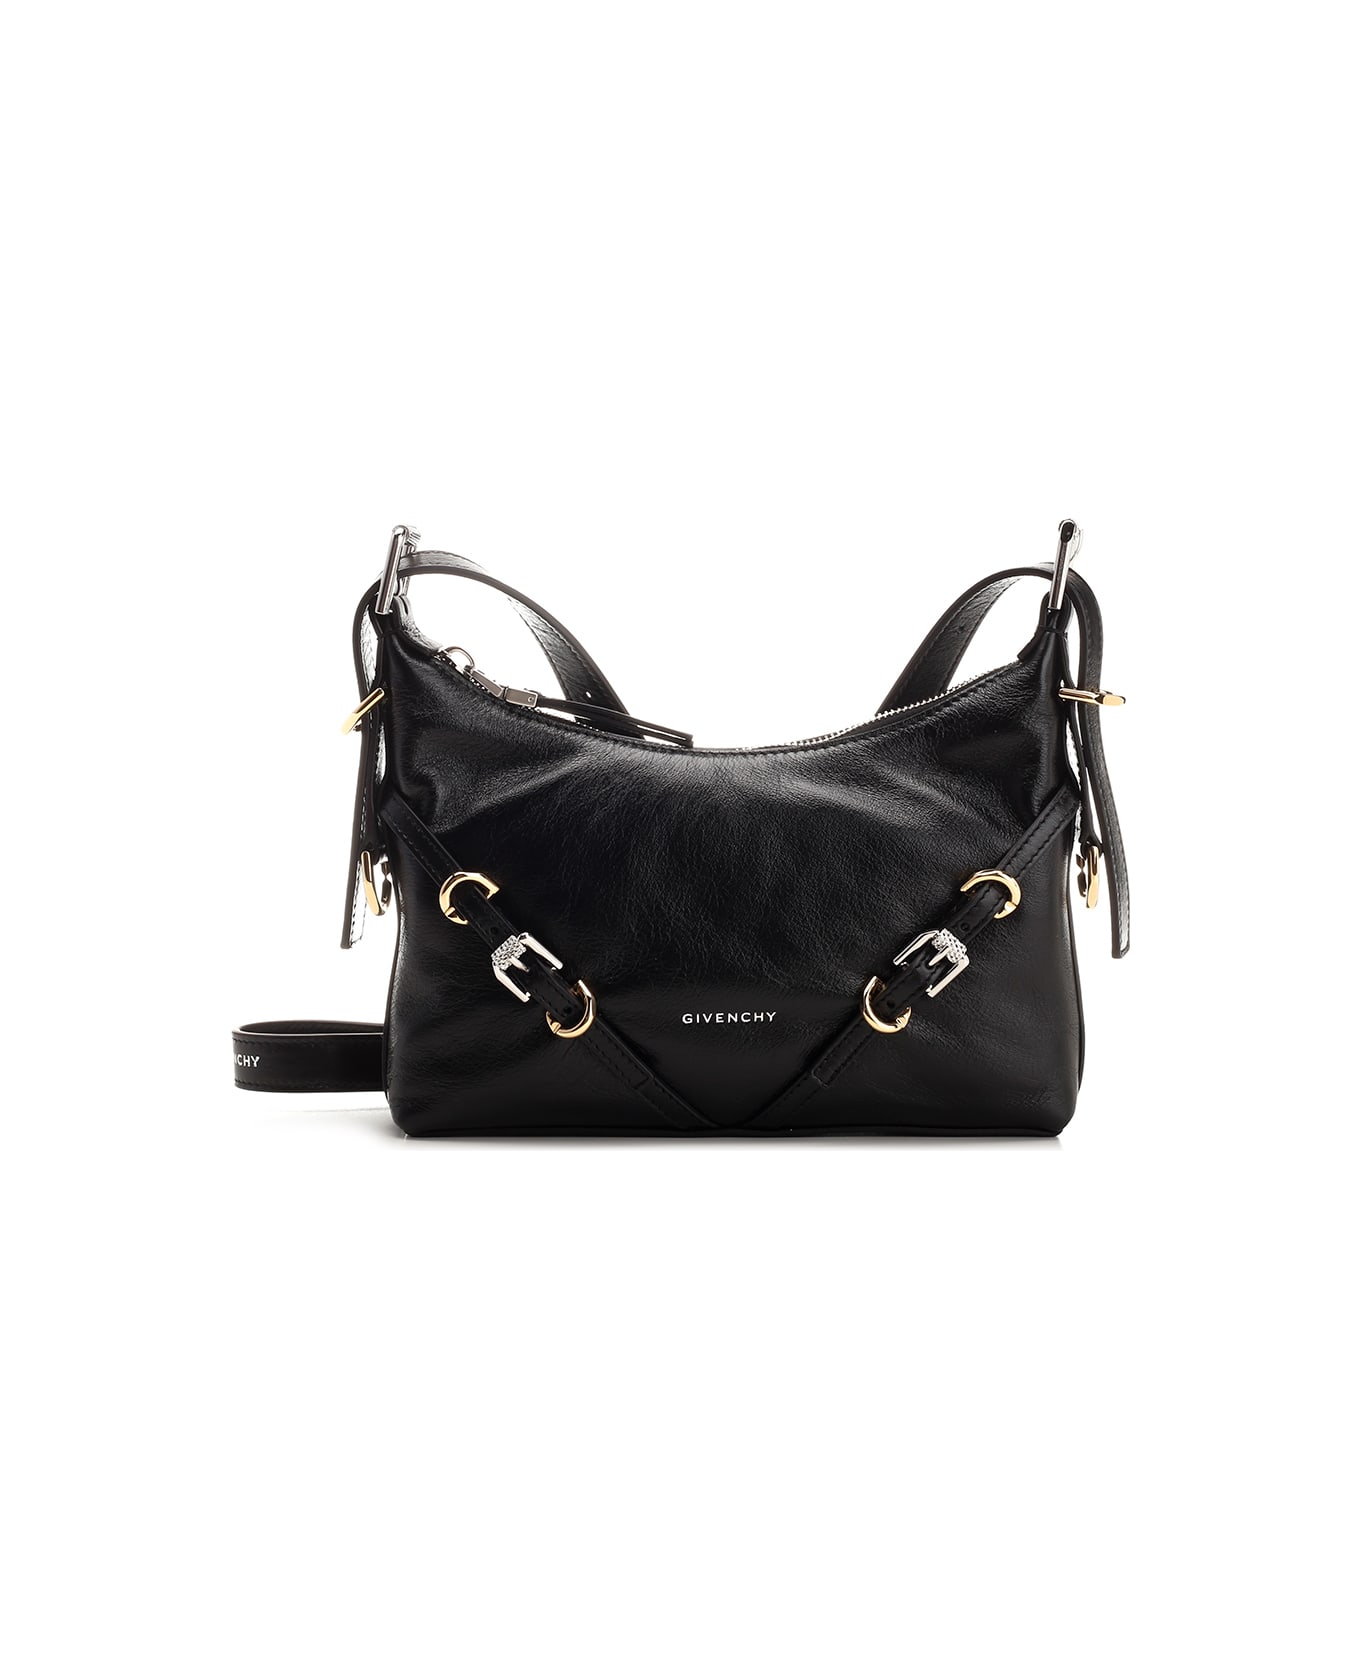 Givenchy 'voyou' Medium Shoulder Bag - Black トートバッグ